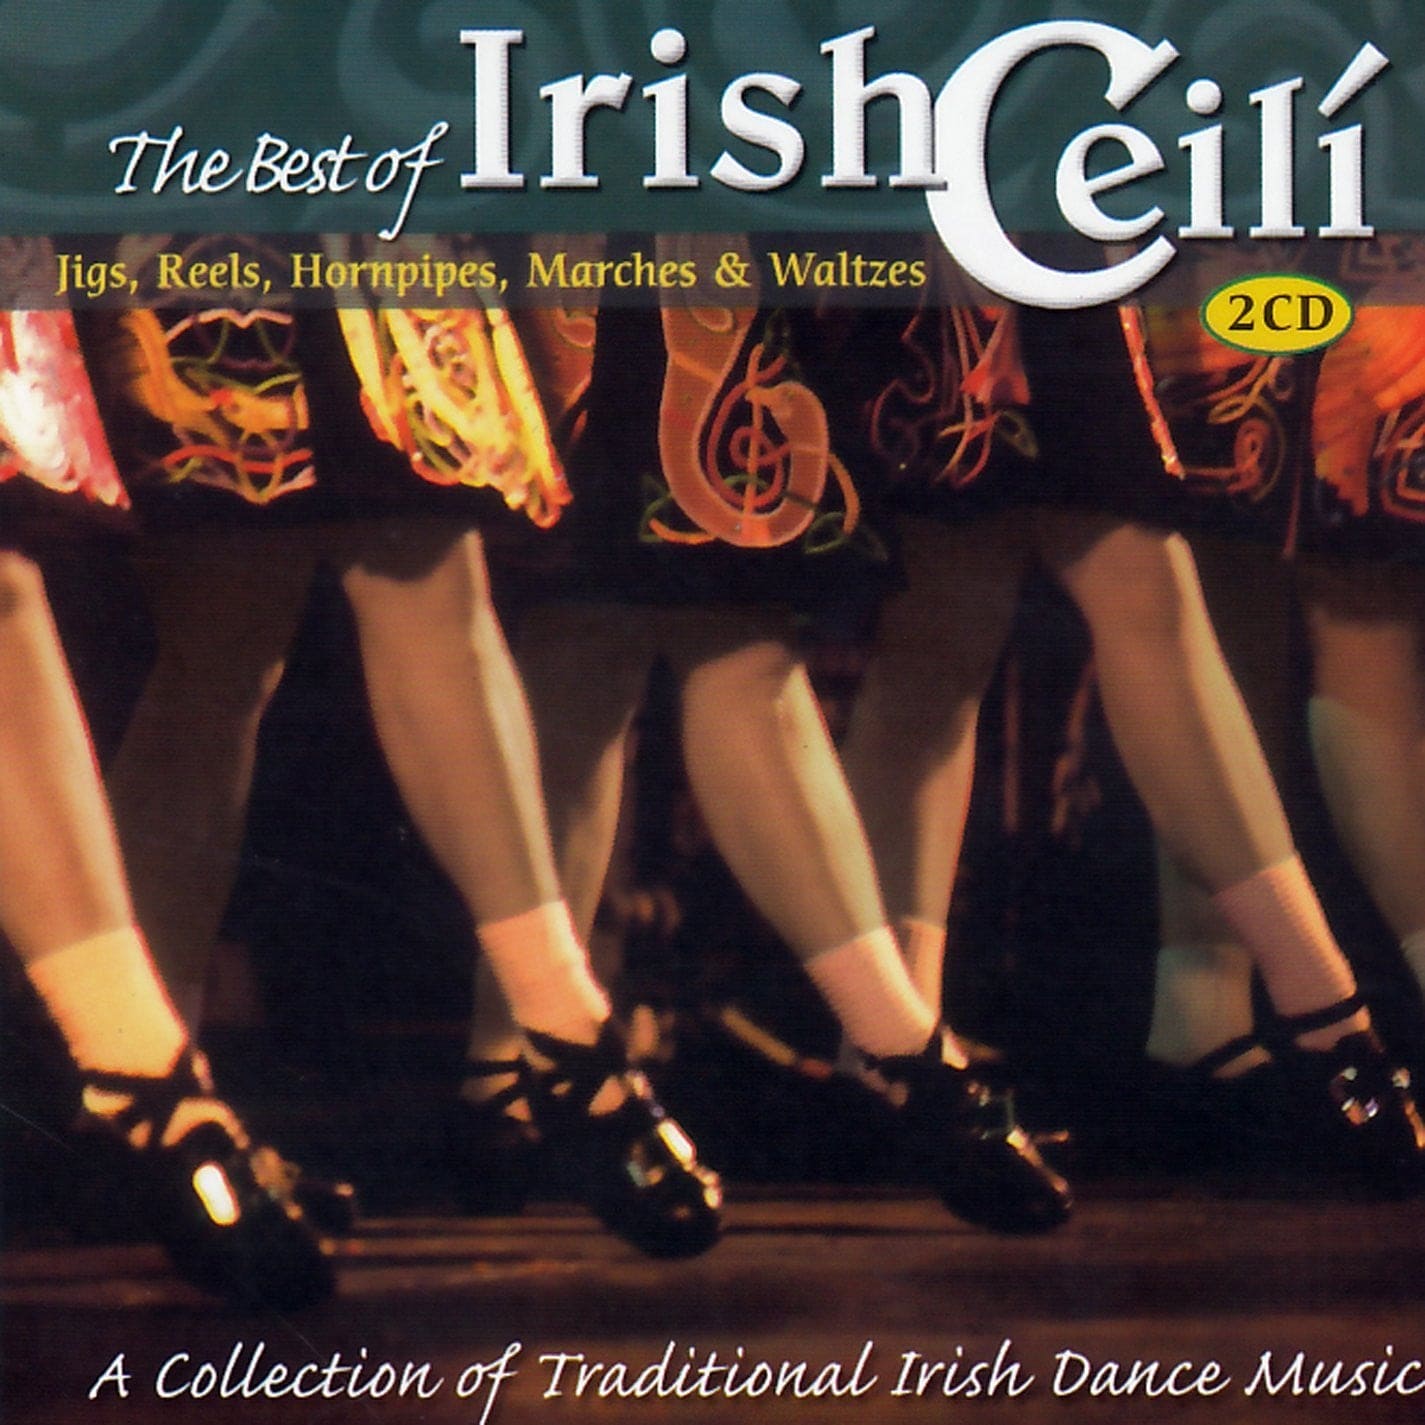 The Best of Irish Céilí - Various Artists [2CD]